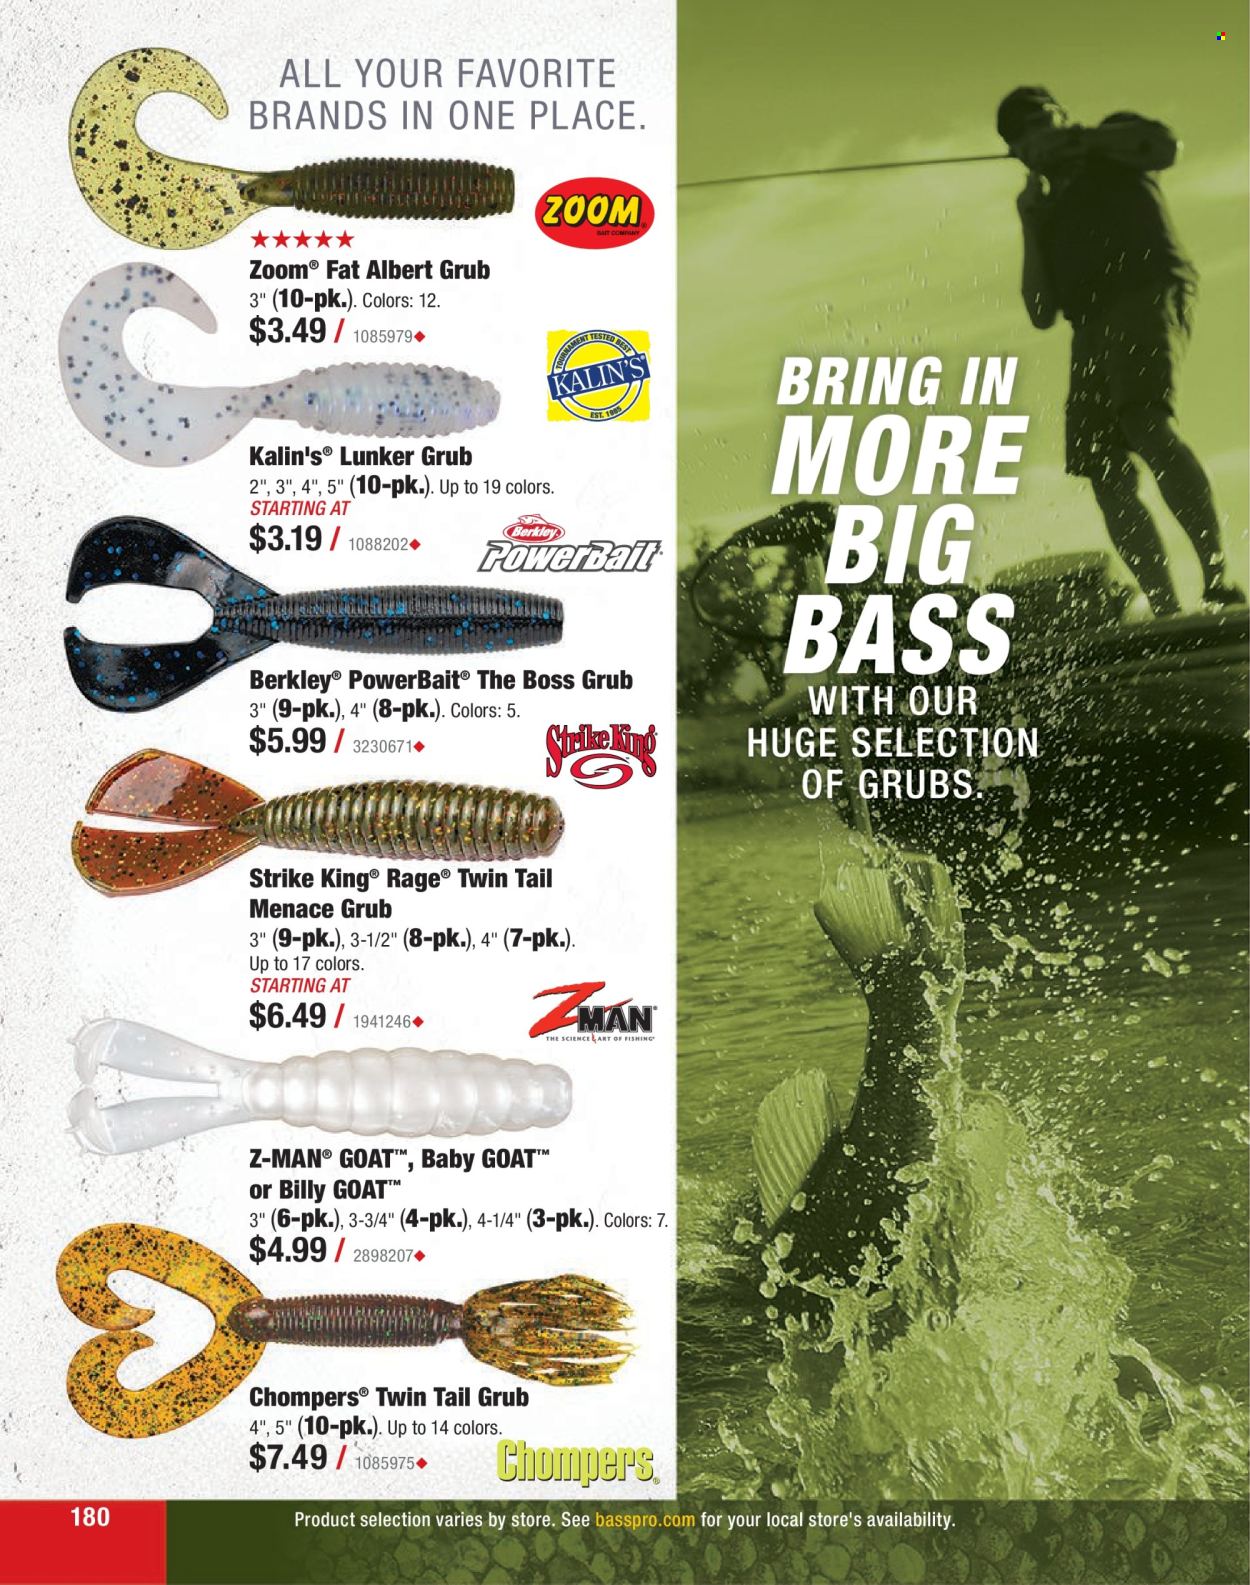 Bass Pro Shops flyer .